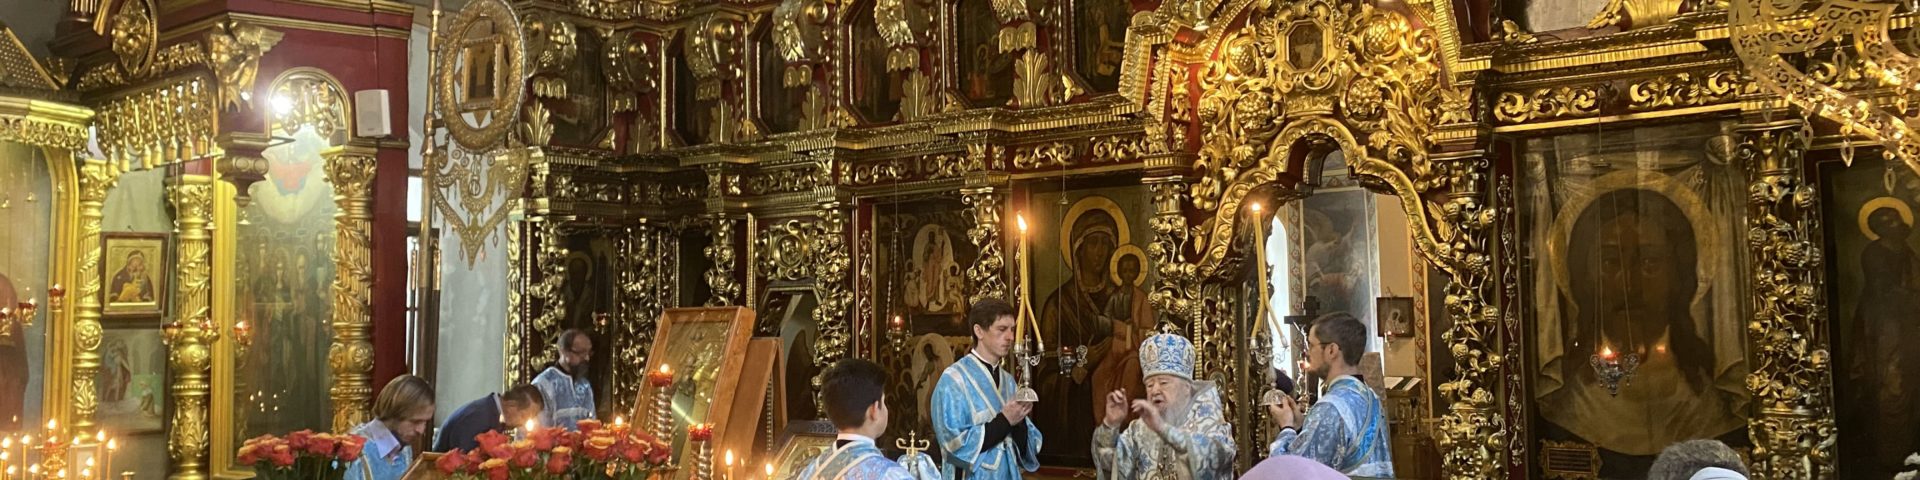 Праздник Явления иконы Пресвятой Богородицы в г. Казани